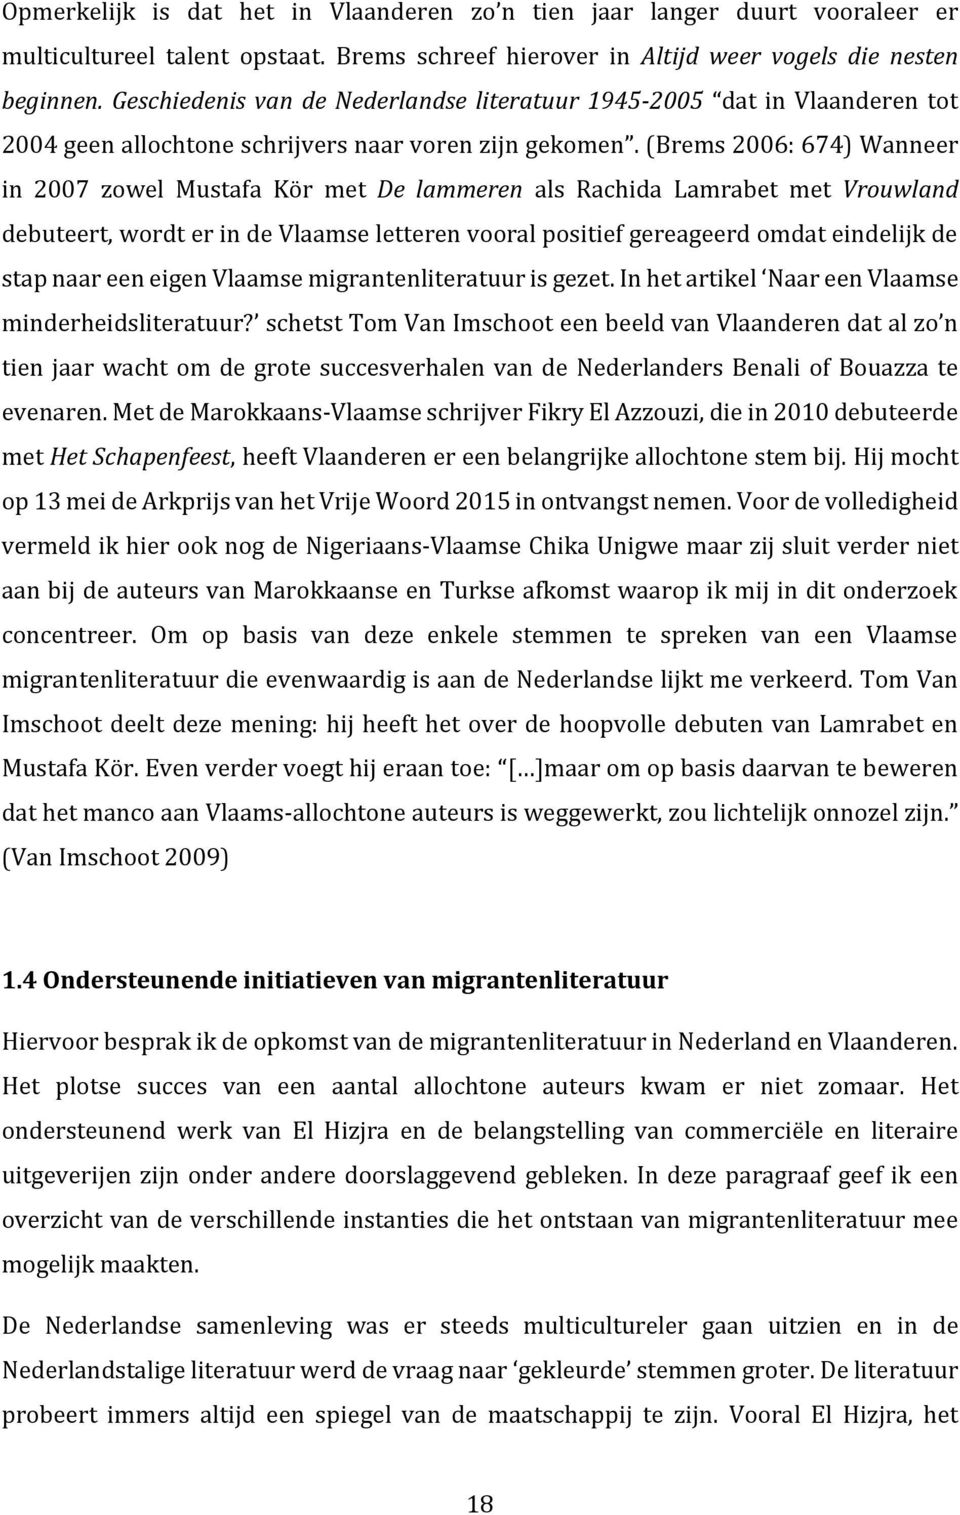 (Brems 2006: 674) Wanneer in 2007 zowel Mustafa Kör met De lammeren als Rachida Lamrabet met Vrouwland debuteert, wordt er in de Vlaamse letteren vooral positief gereageerd omdat eindelijk de stap